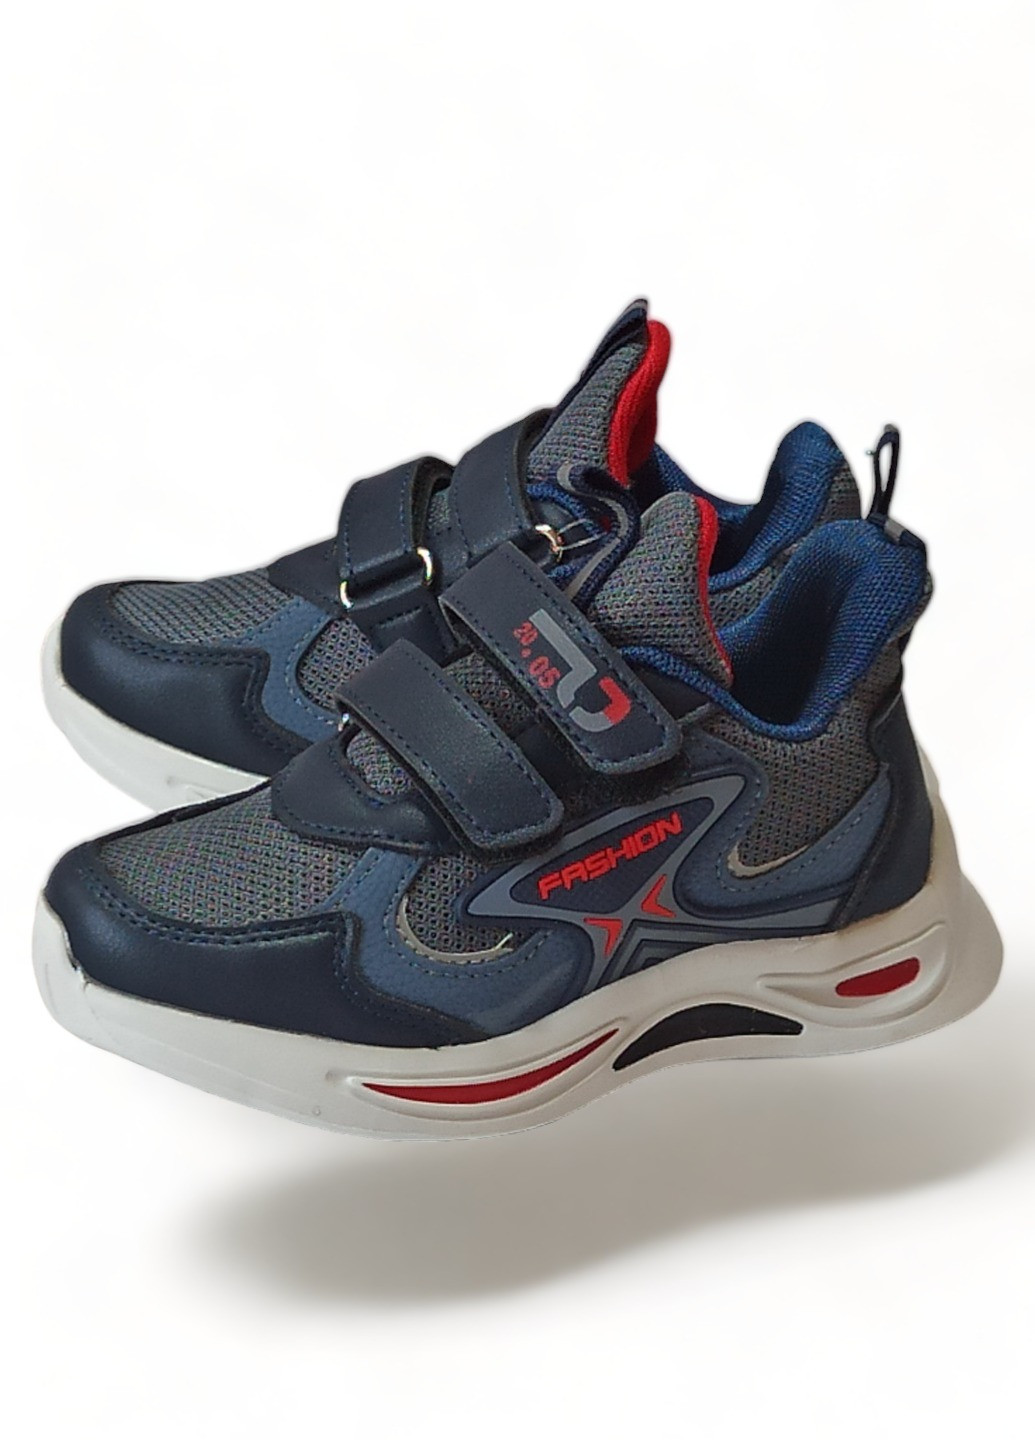 Синие демисезонные детские кроссовки для мальчика текстильные том м 9007 Tom.M